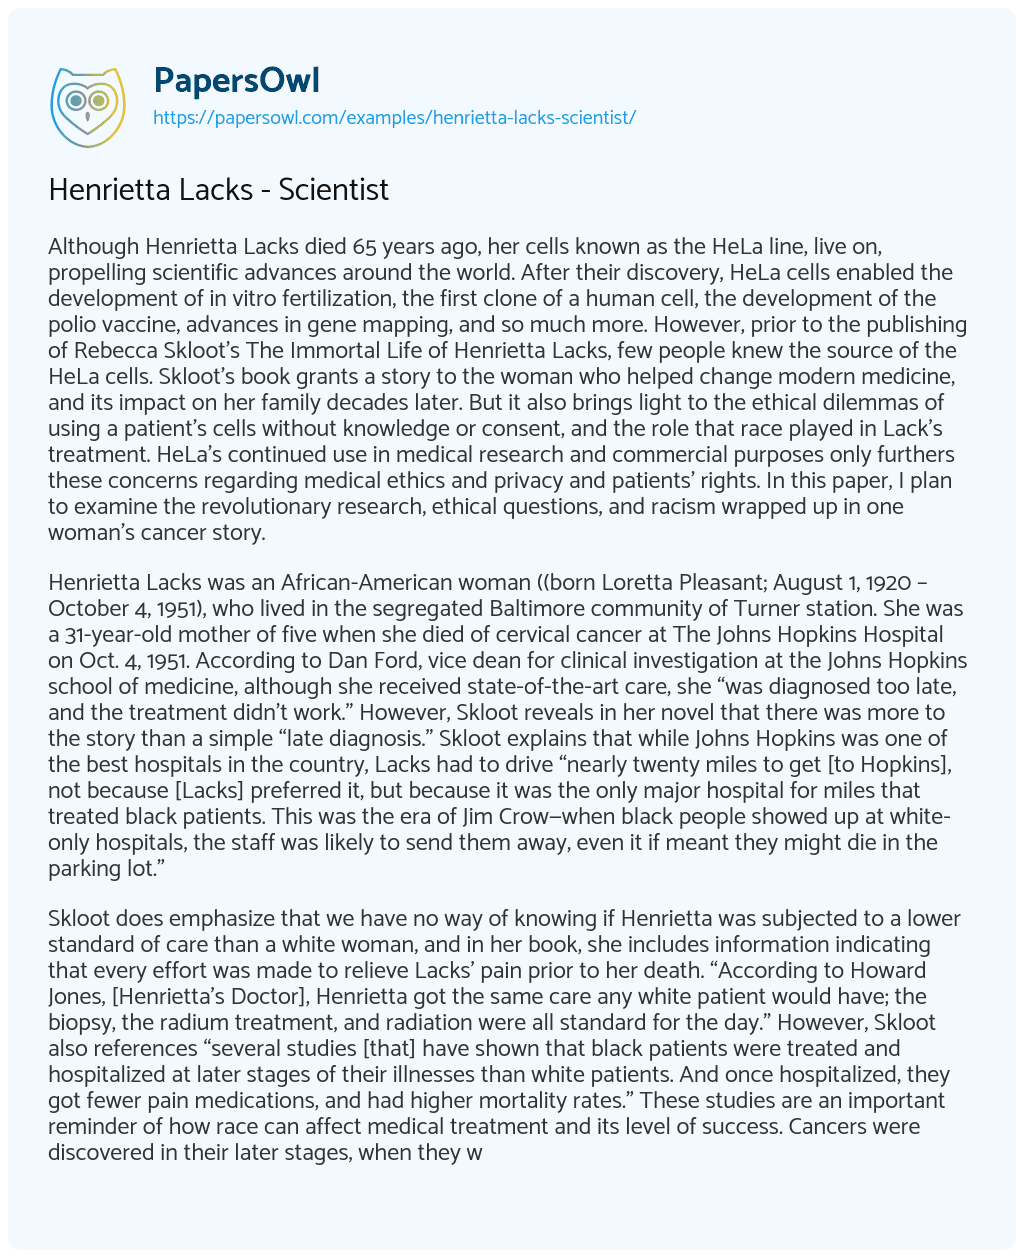 Essay on Henrietta Lacks – Scientist